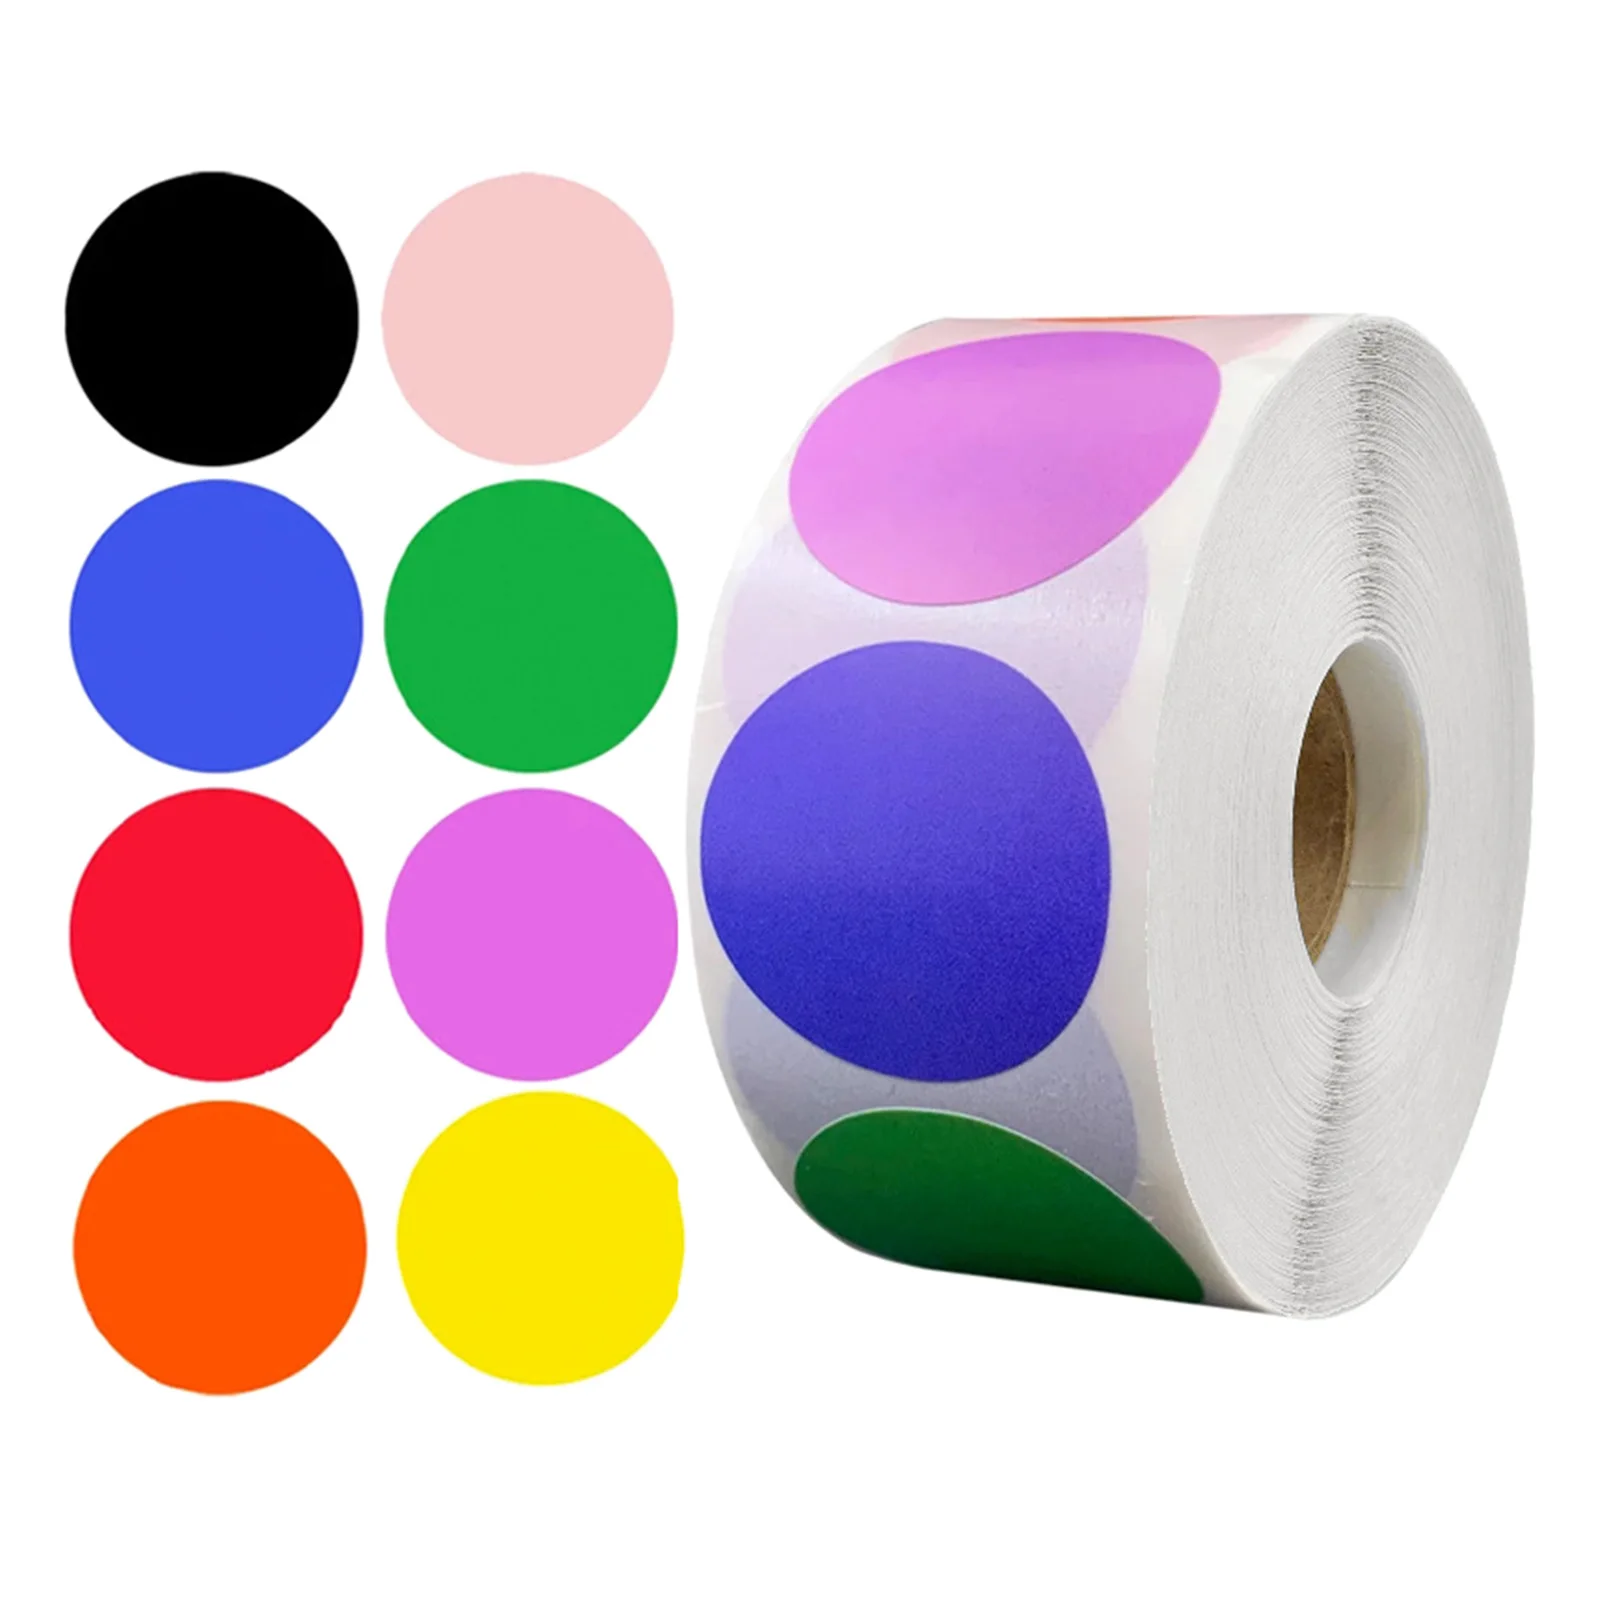 

Круглые наклейки, 1 дюйм, цветные круглые наклейки, ярлык для маркировки перезаписываемых этикеток, 500 штук в рулоне